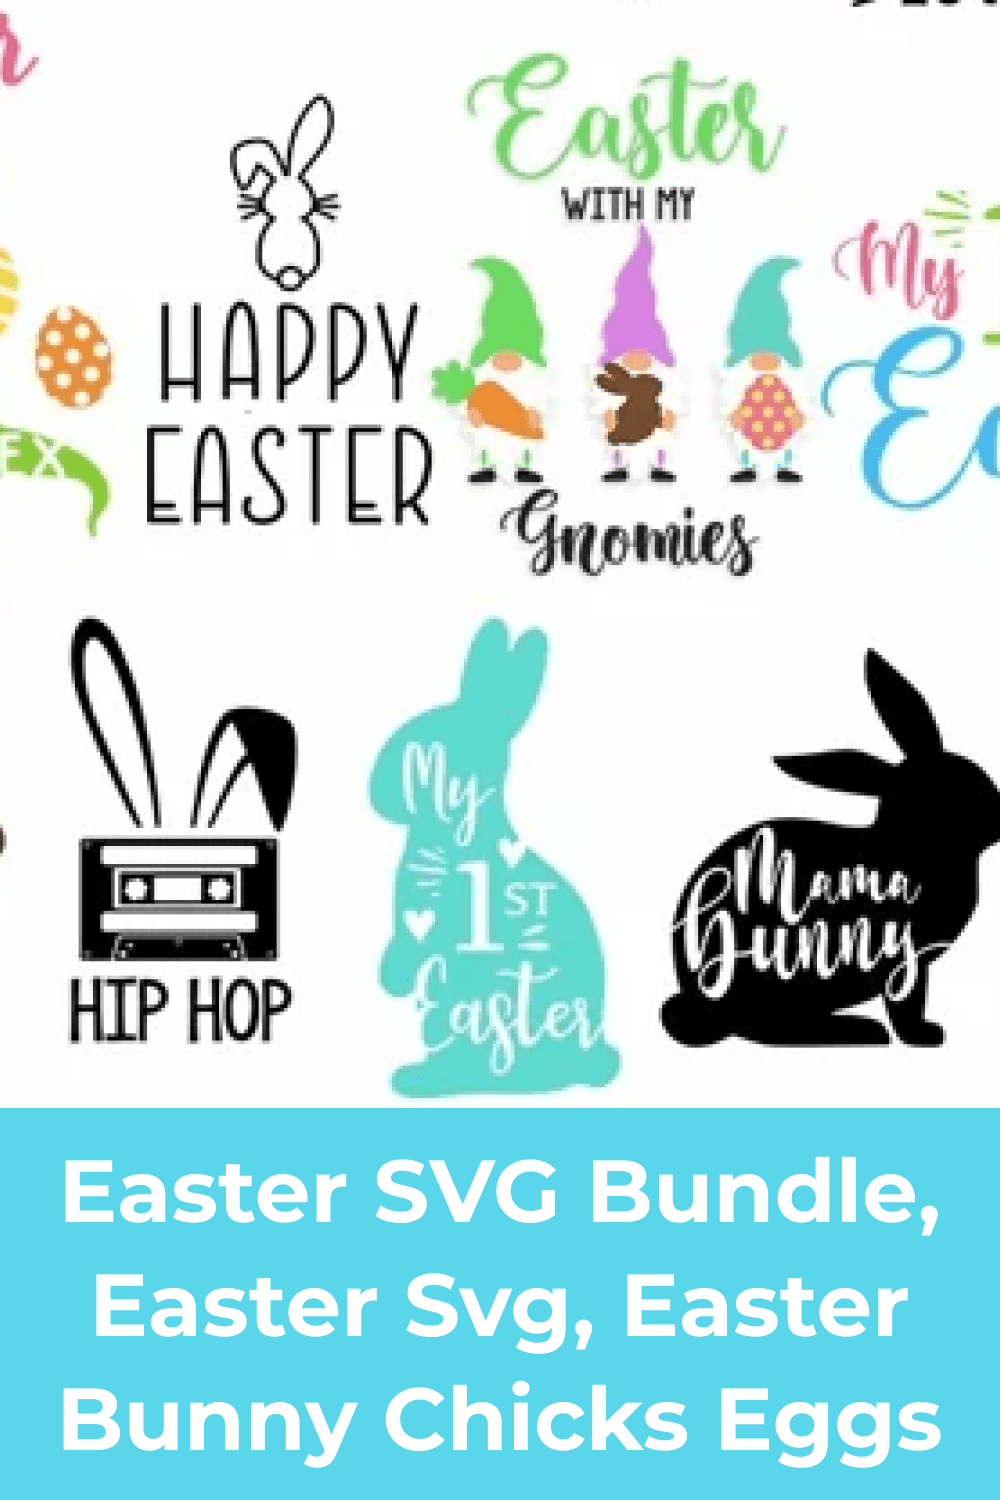 Easter SVG Bundle, Easter Svg, Easter Bunny Chicks Eggs.